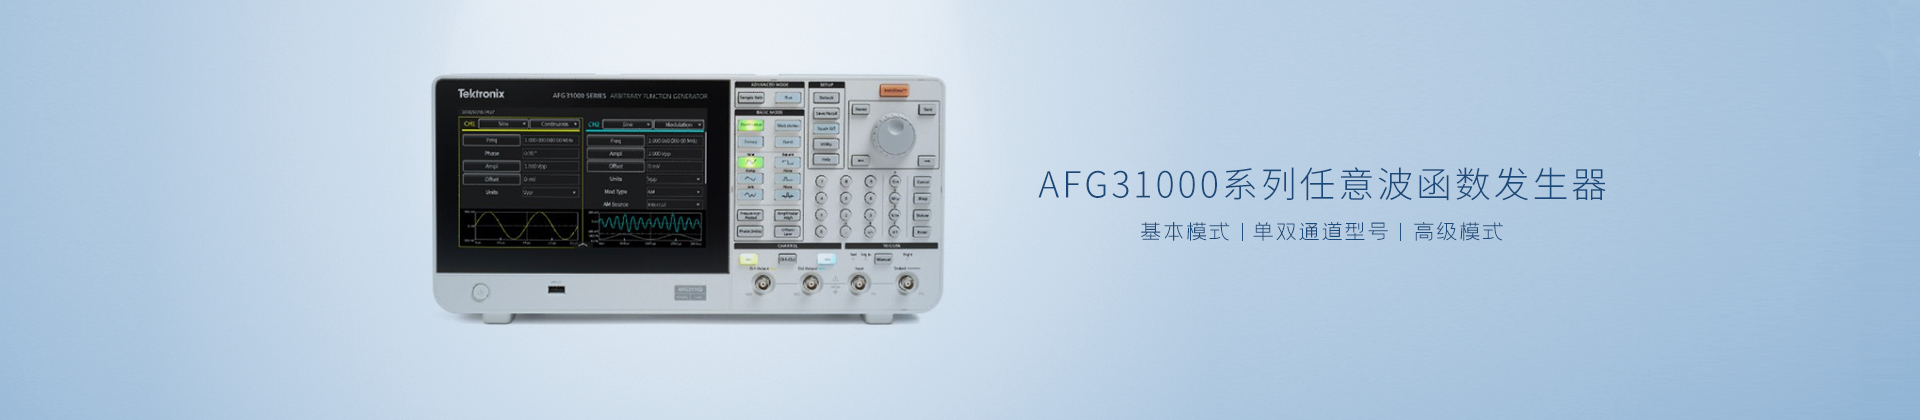 AFG31000系列任意波函数发生器